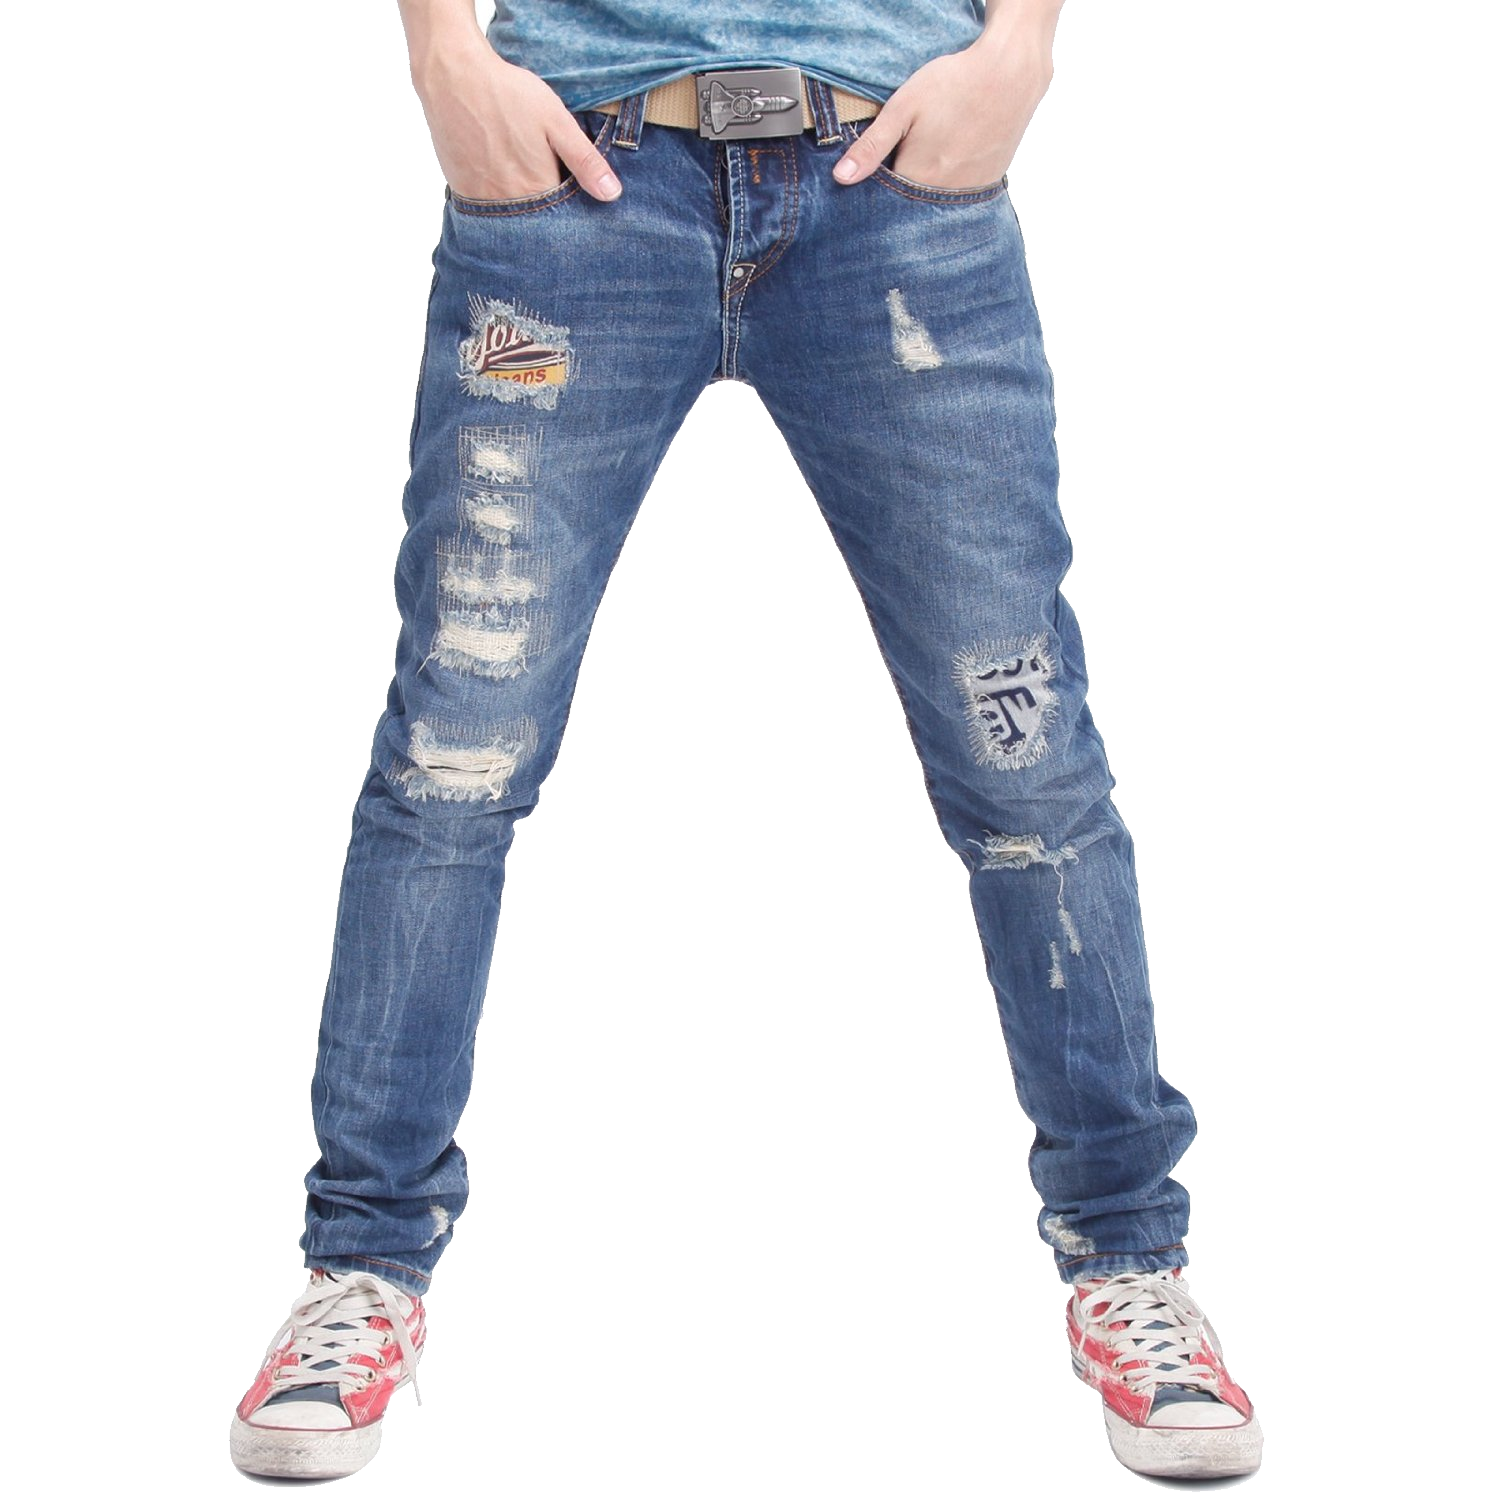 Jeans Transparent Clip Art Image